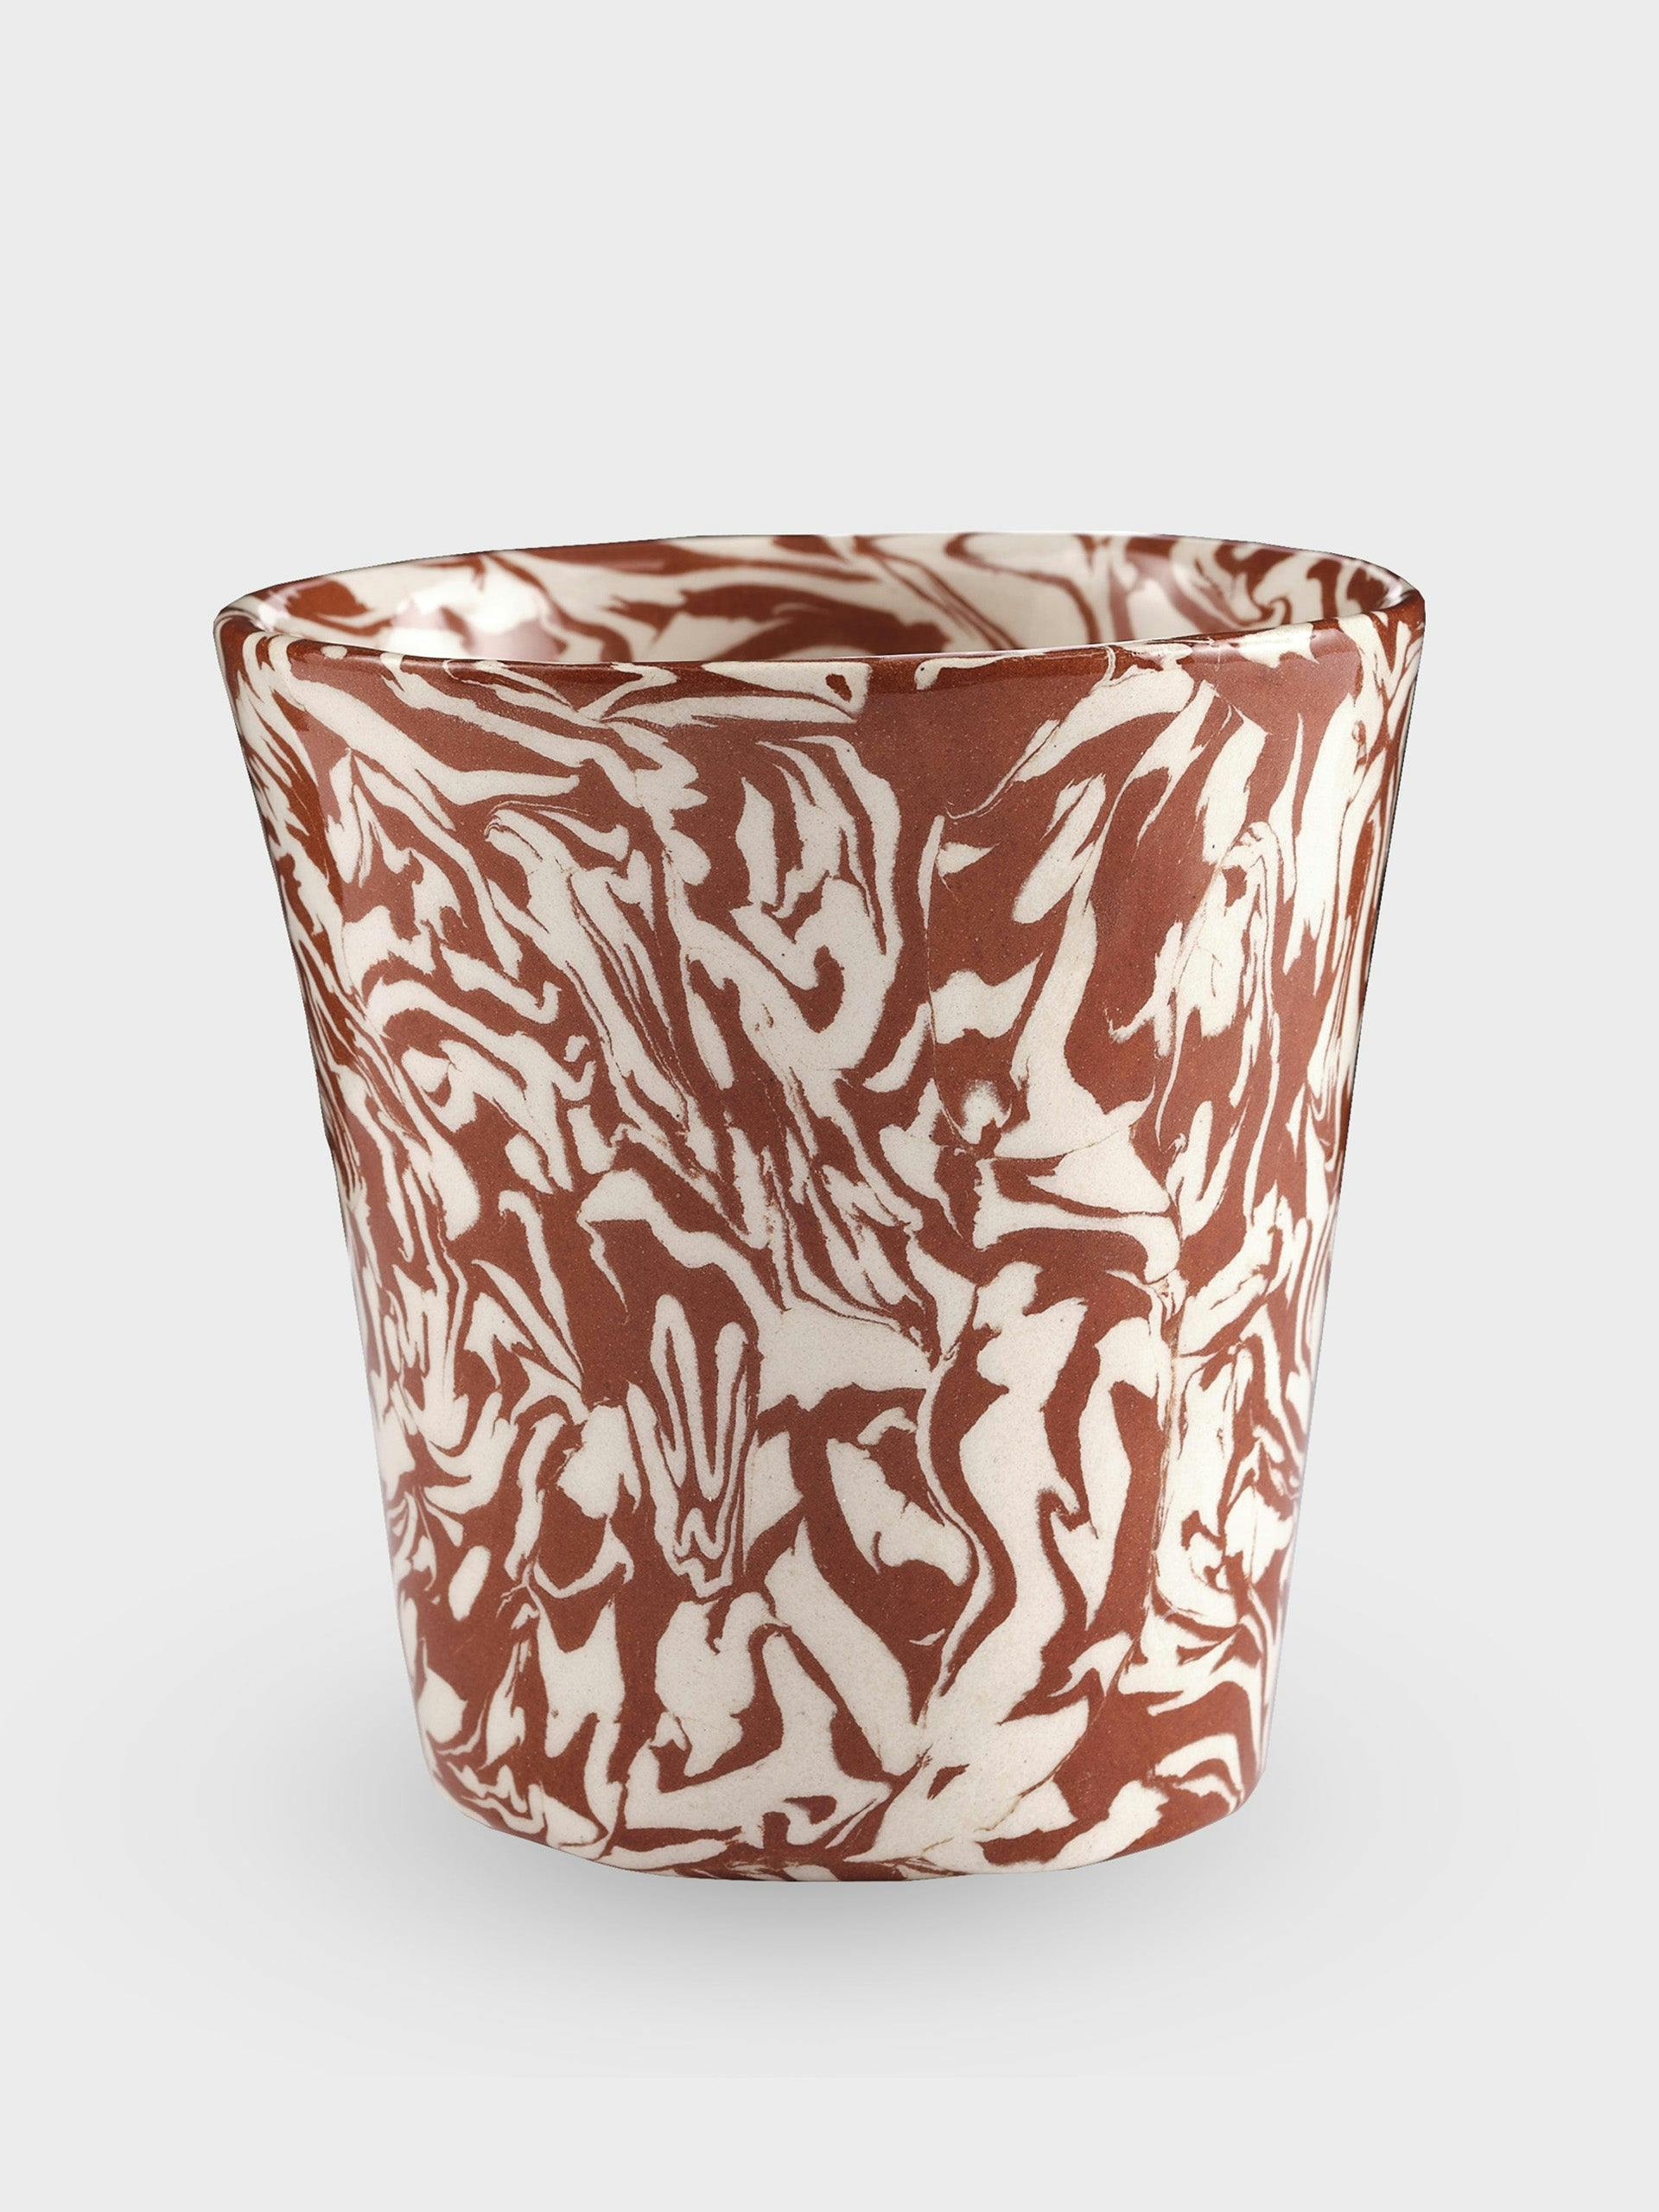 Natural marbled ceramic tumbler